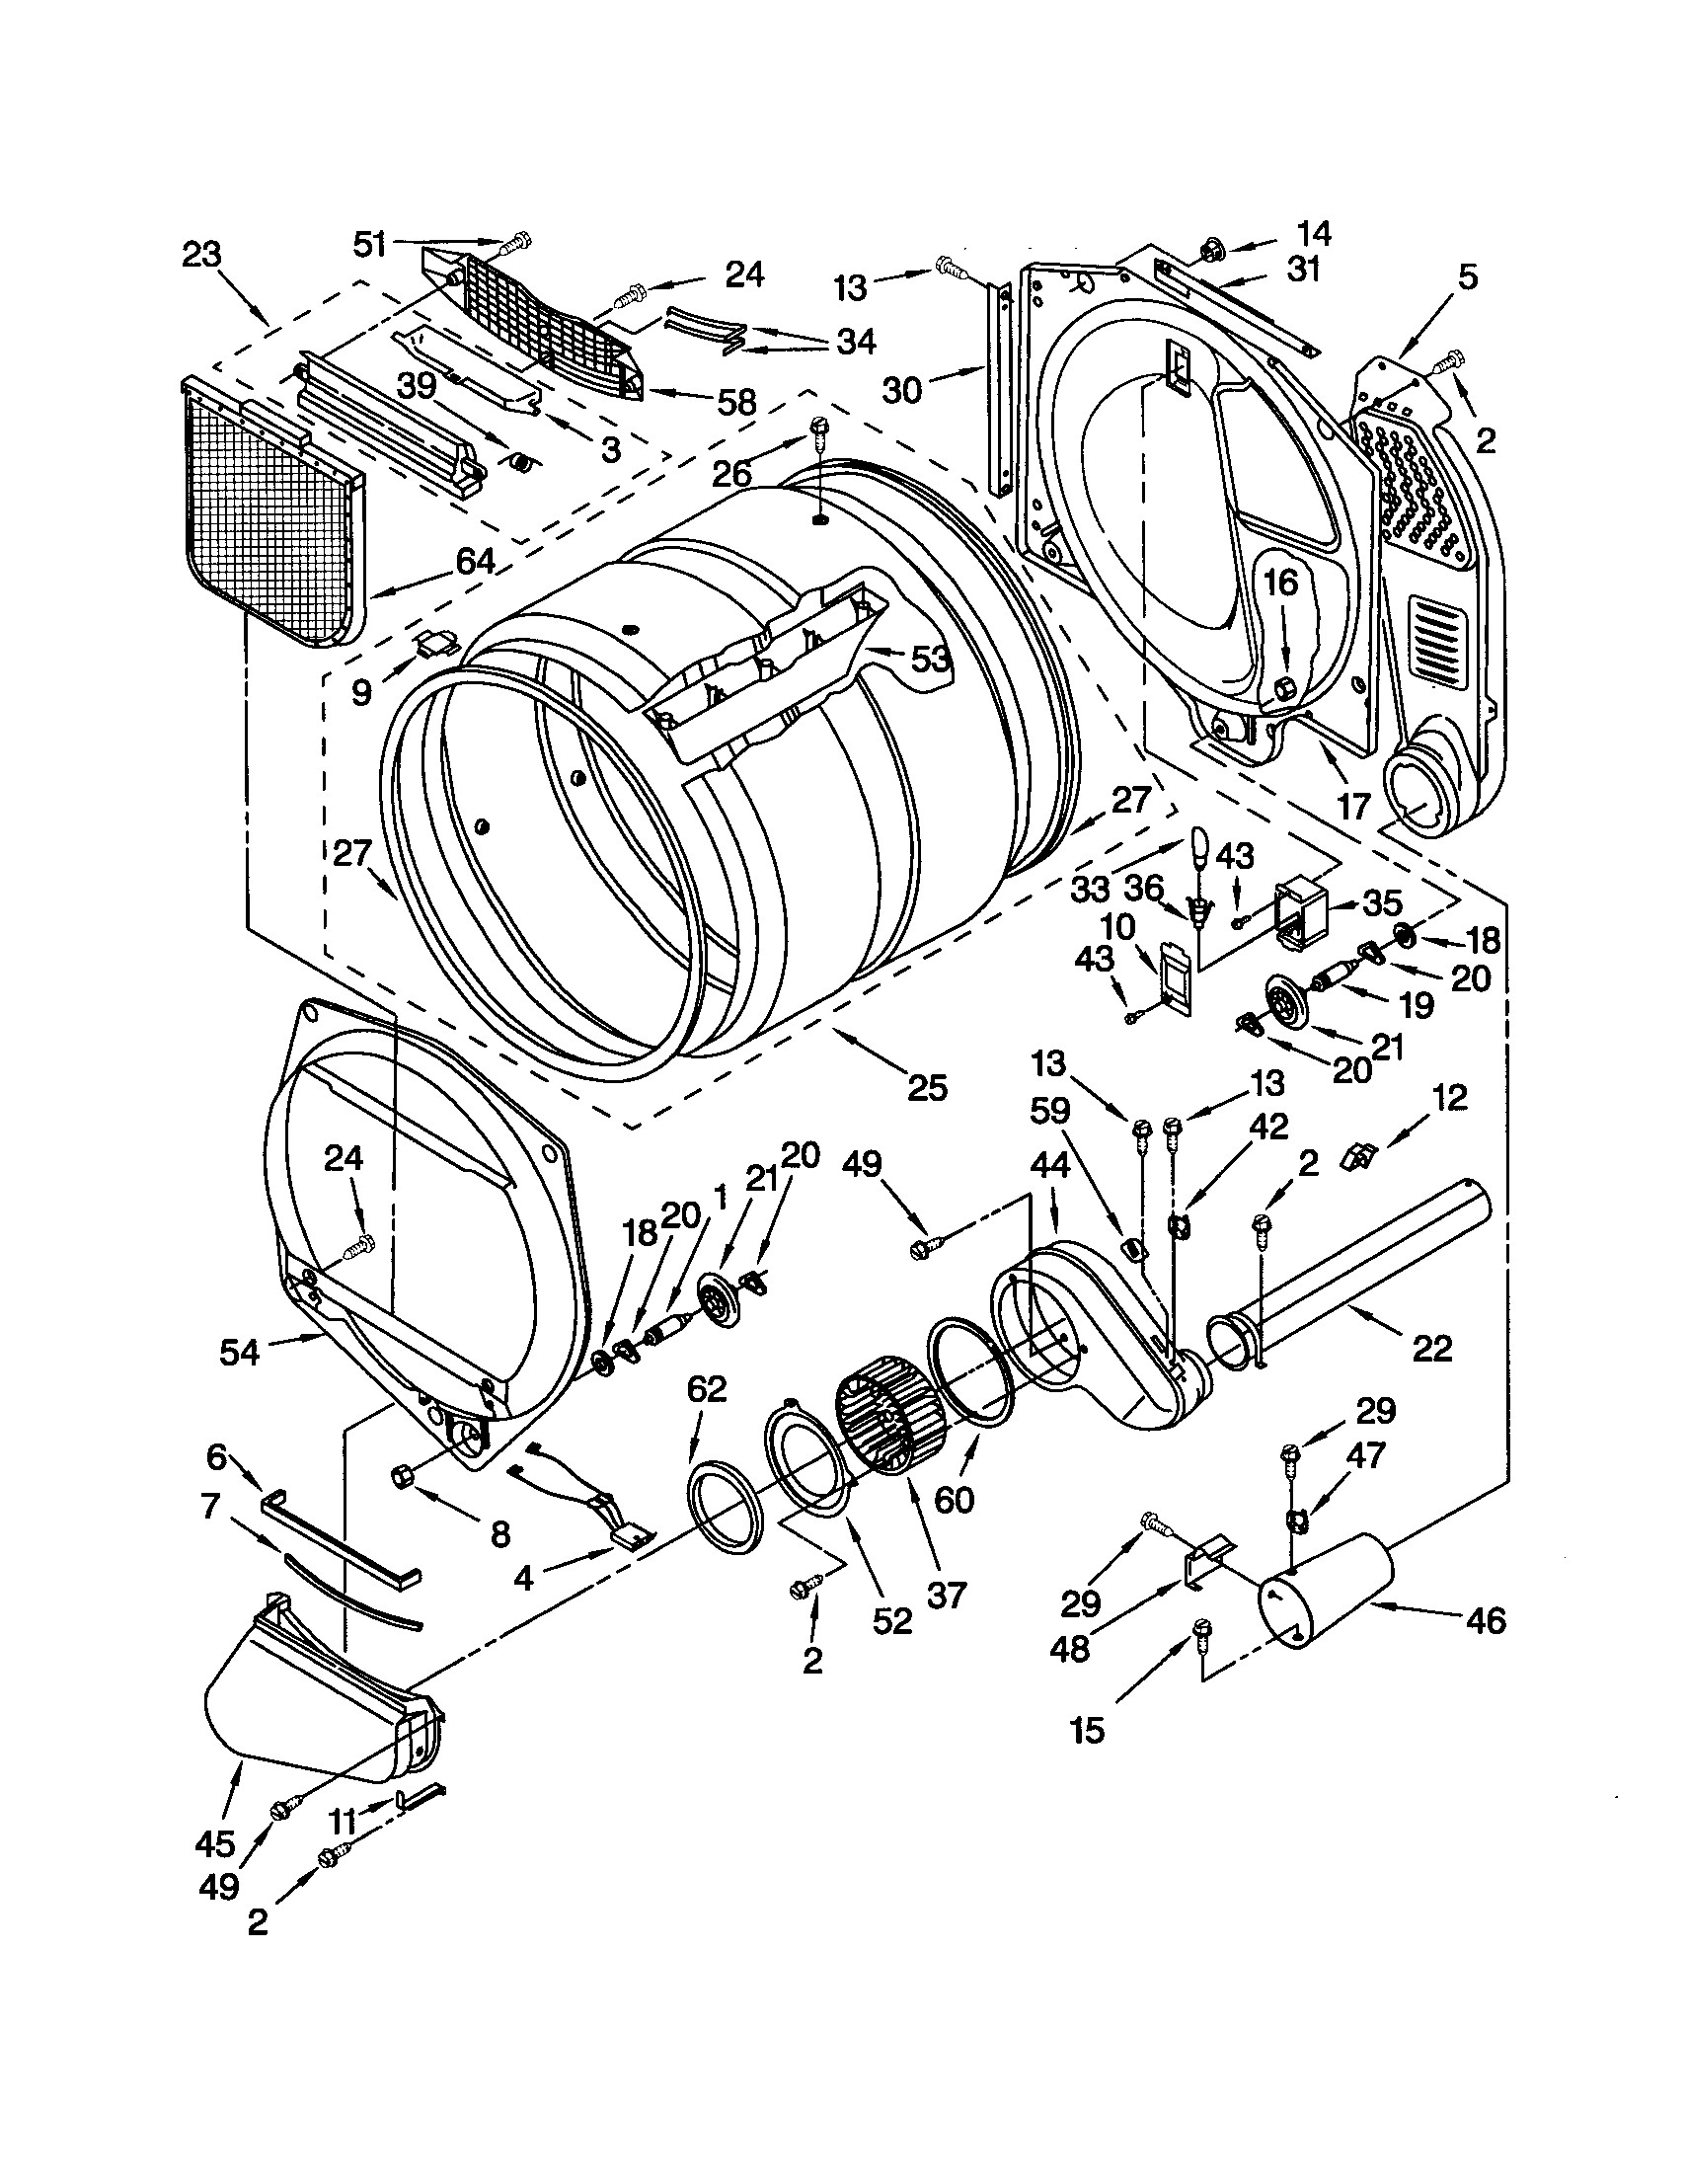 Kenmore Elite Dryer Wiring Diagram